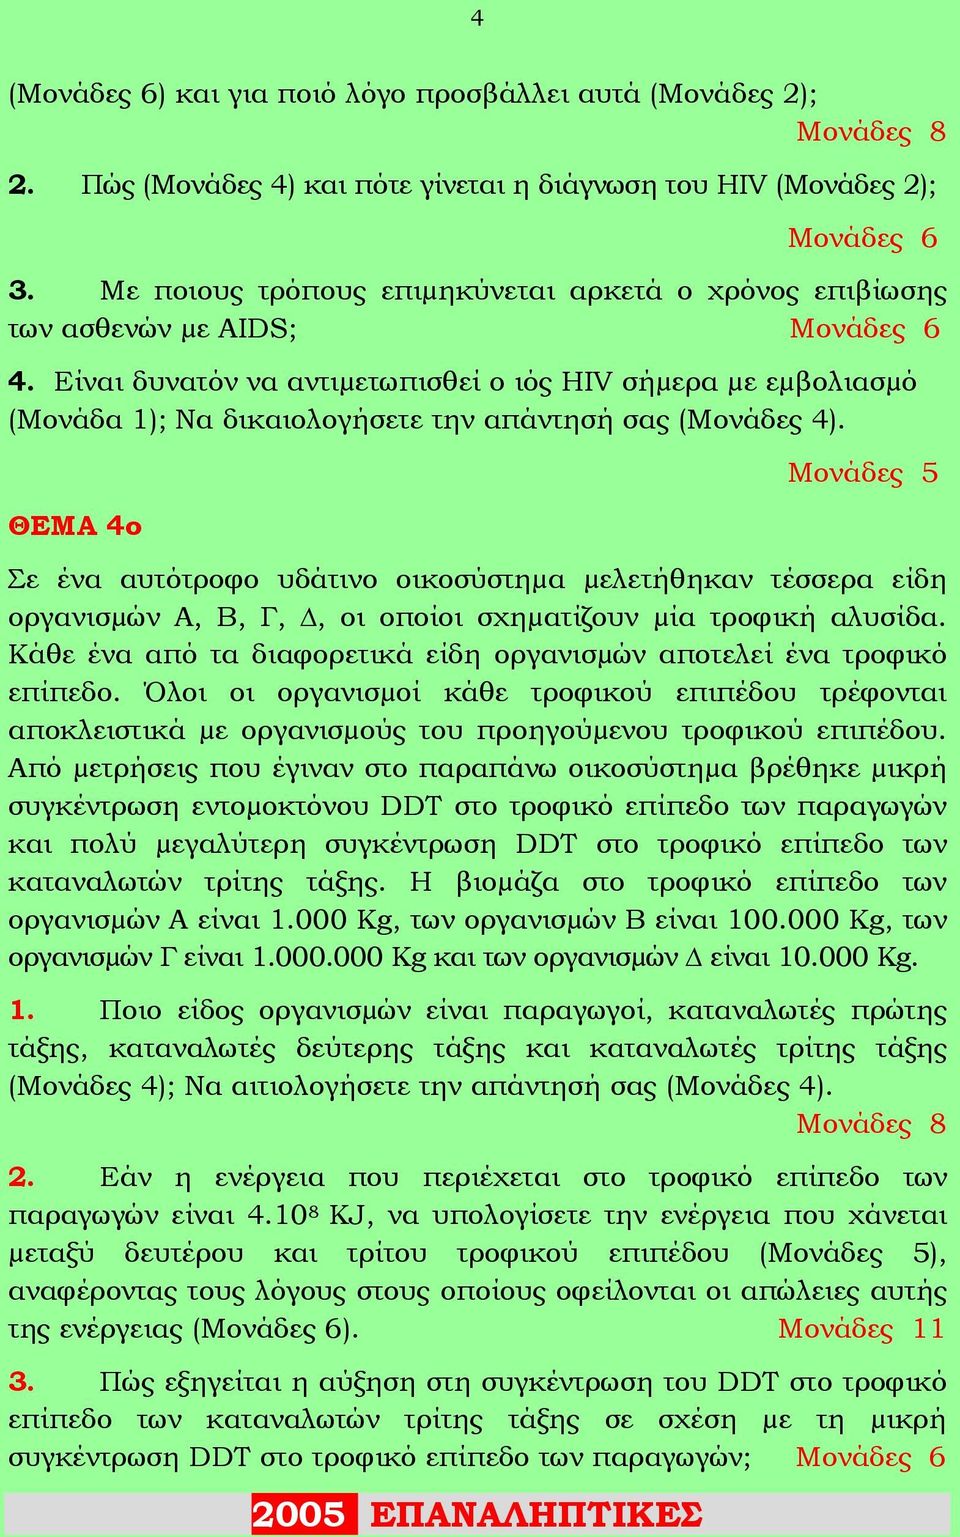 Είναι δυνατόν να αντιµετωπισθεί ο ιός HIV σήµερα µε εµβολιασµό (Μονάδα 1); Να δικαιολογήσετε την απάντησή σας (Μονάδες 4).